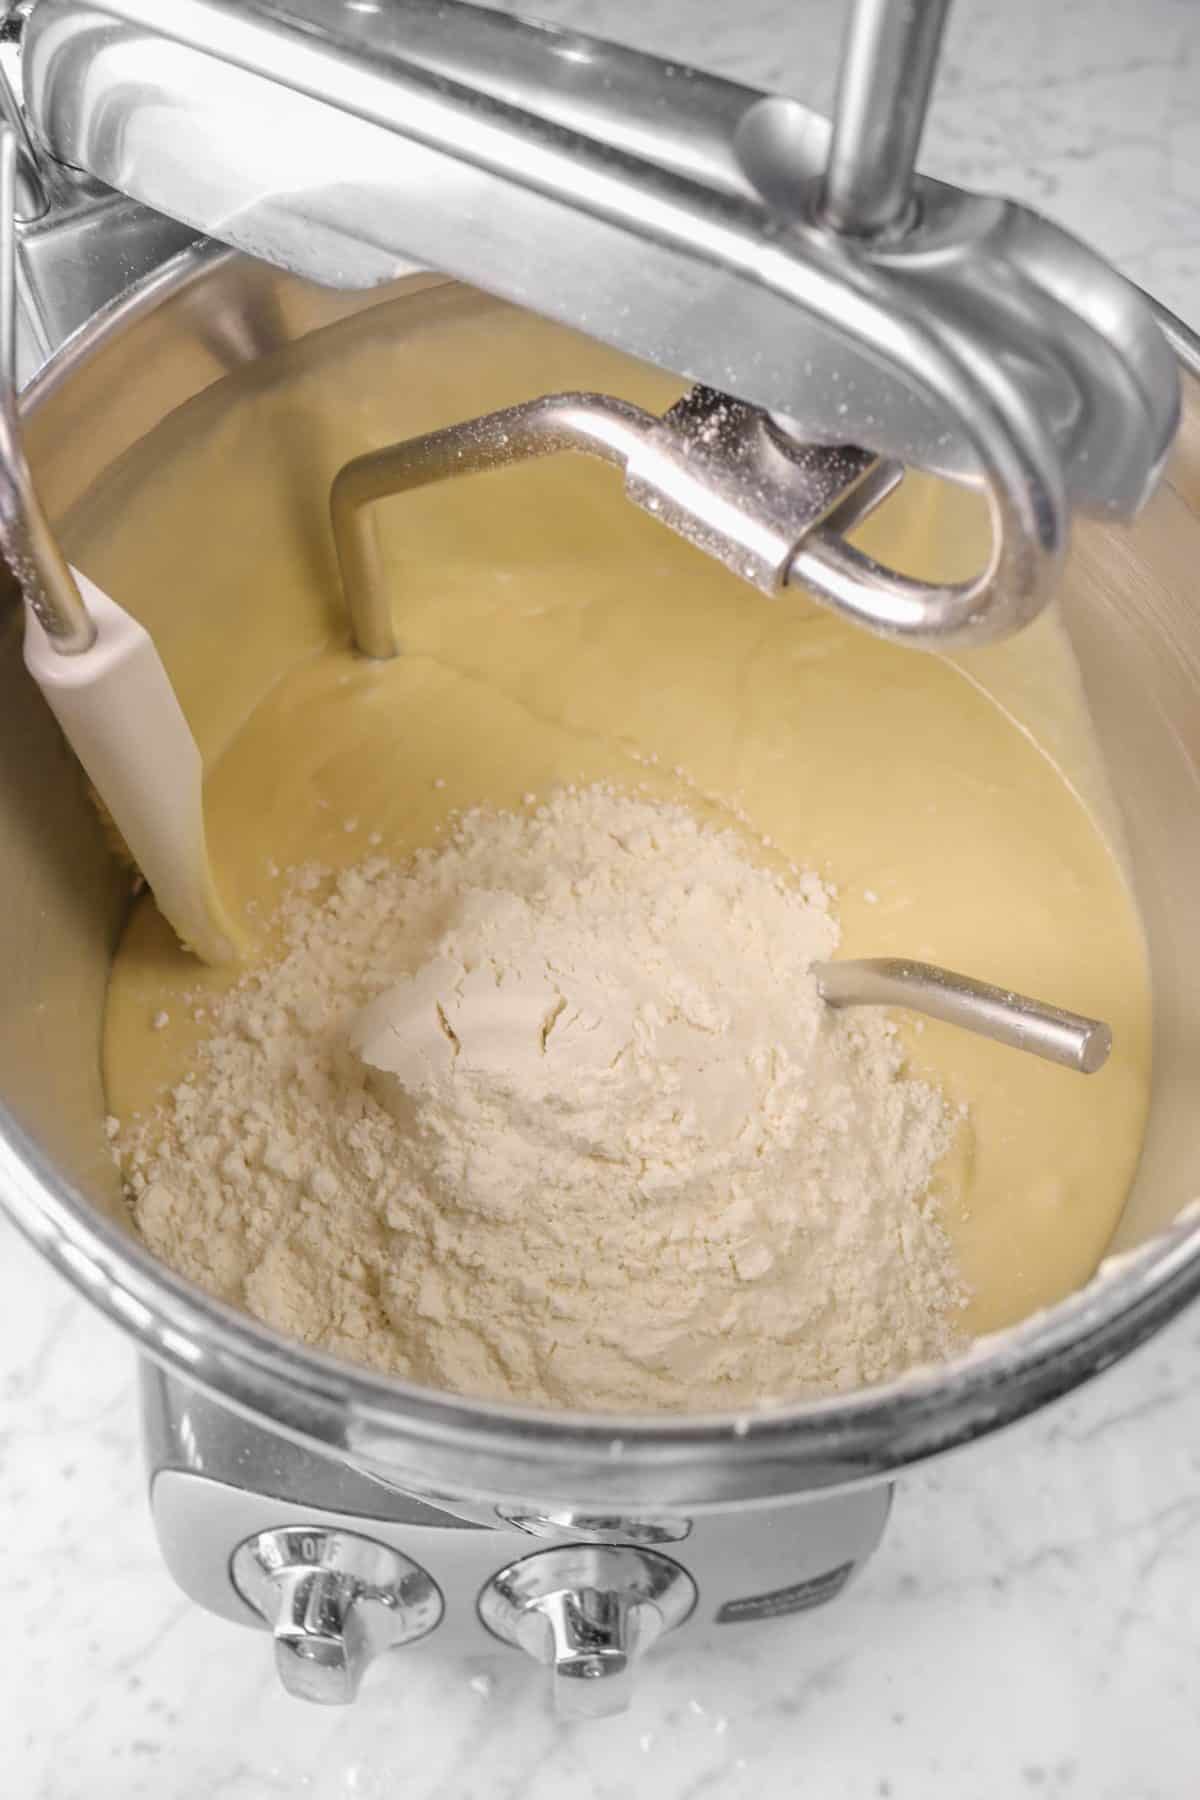 flour added to cinnamon roll dough